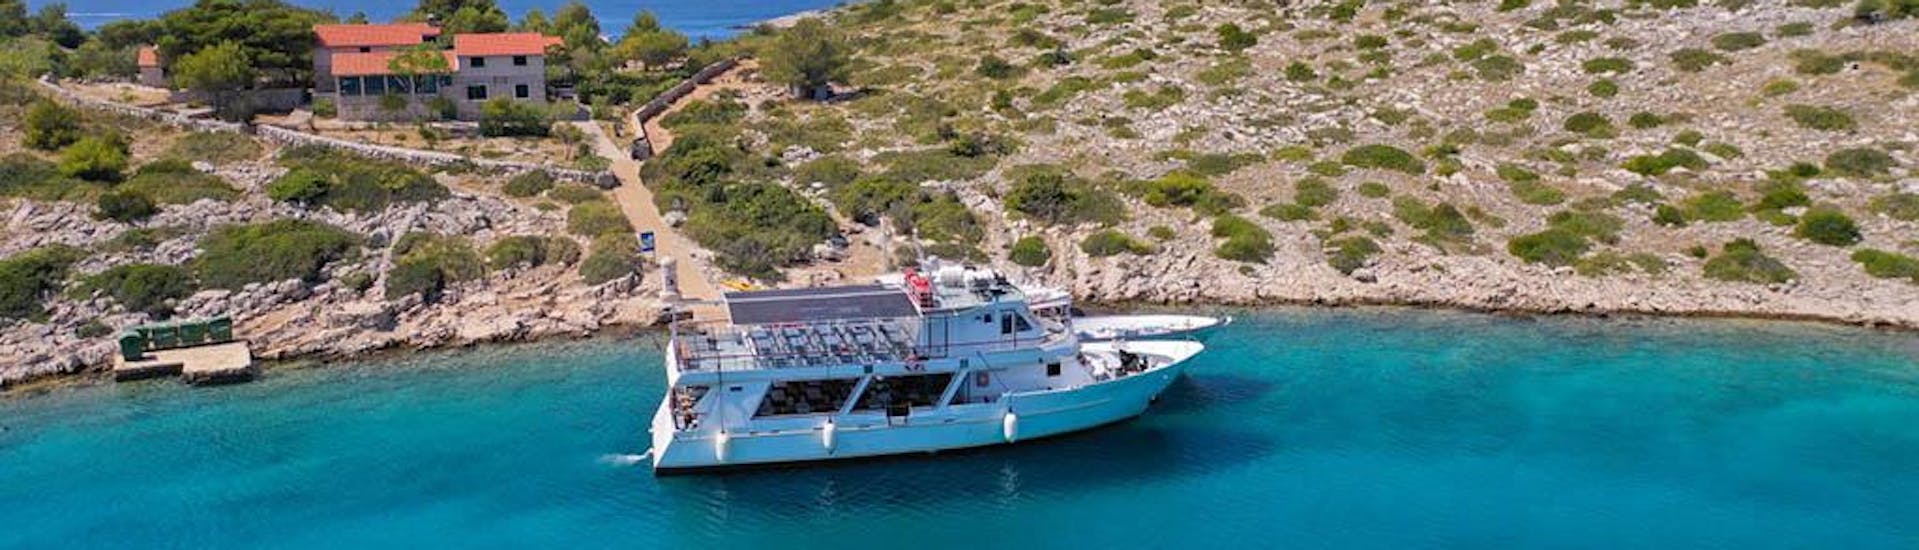 Das Boot von Maslina Tours Zadar im Wasser während einer Tour.